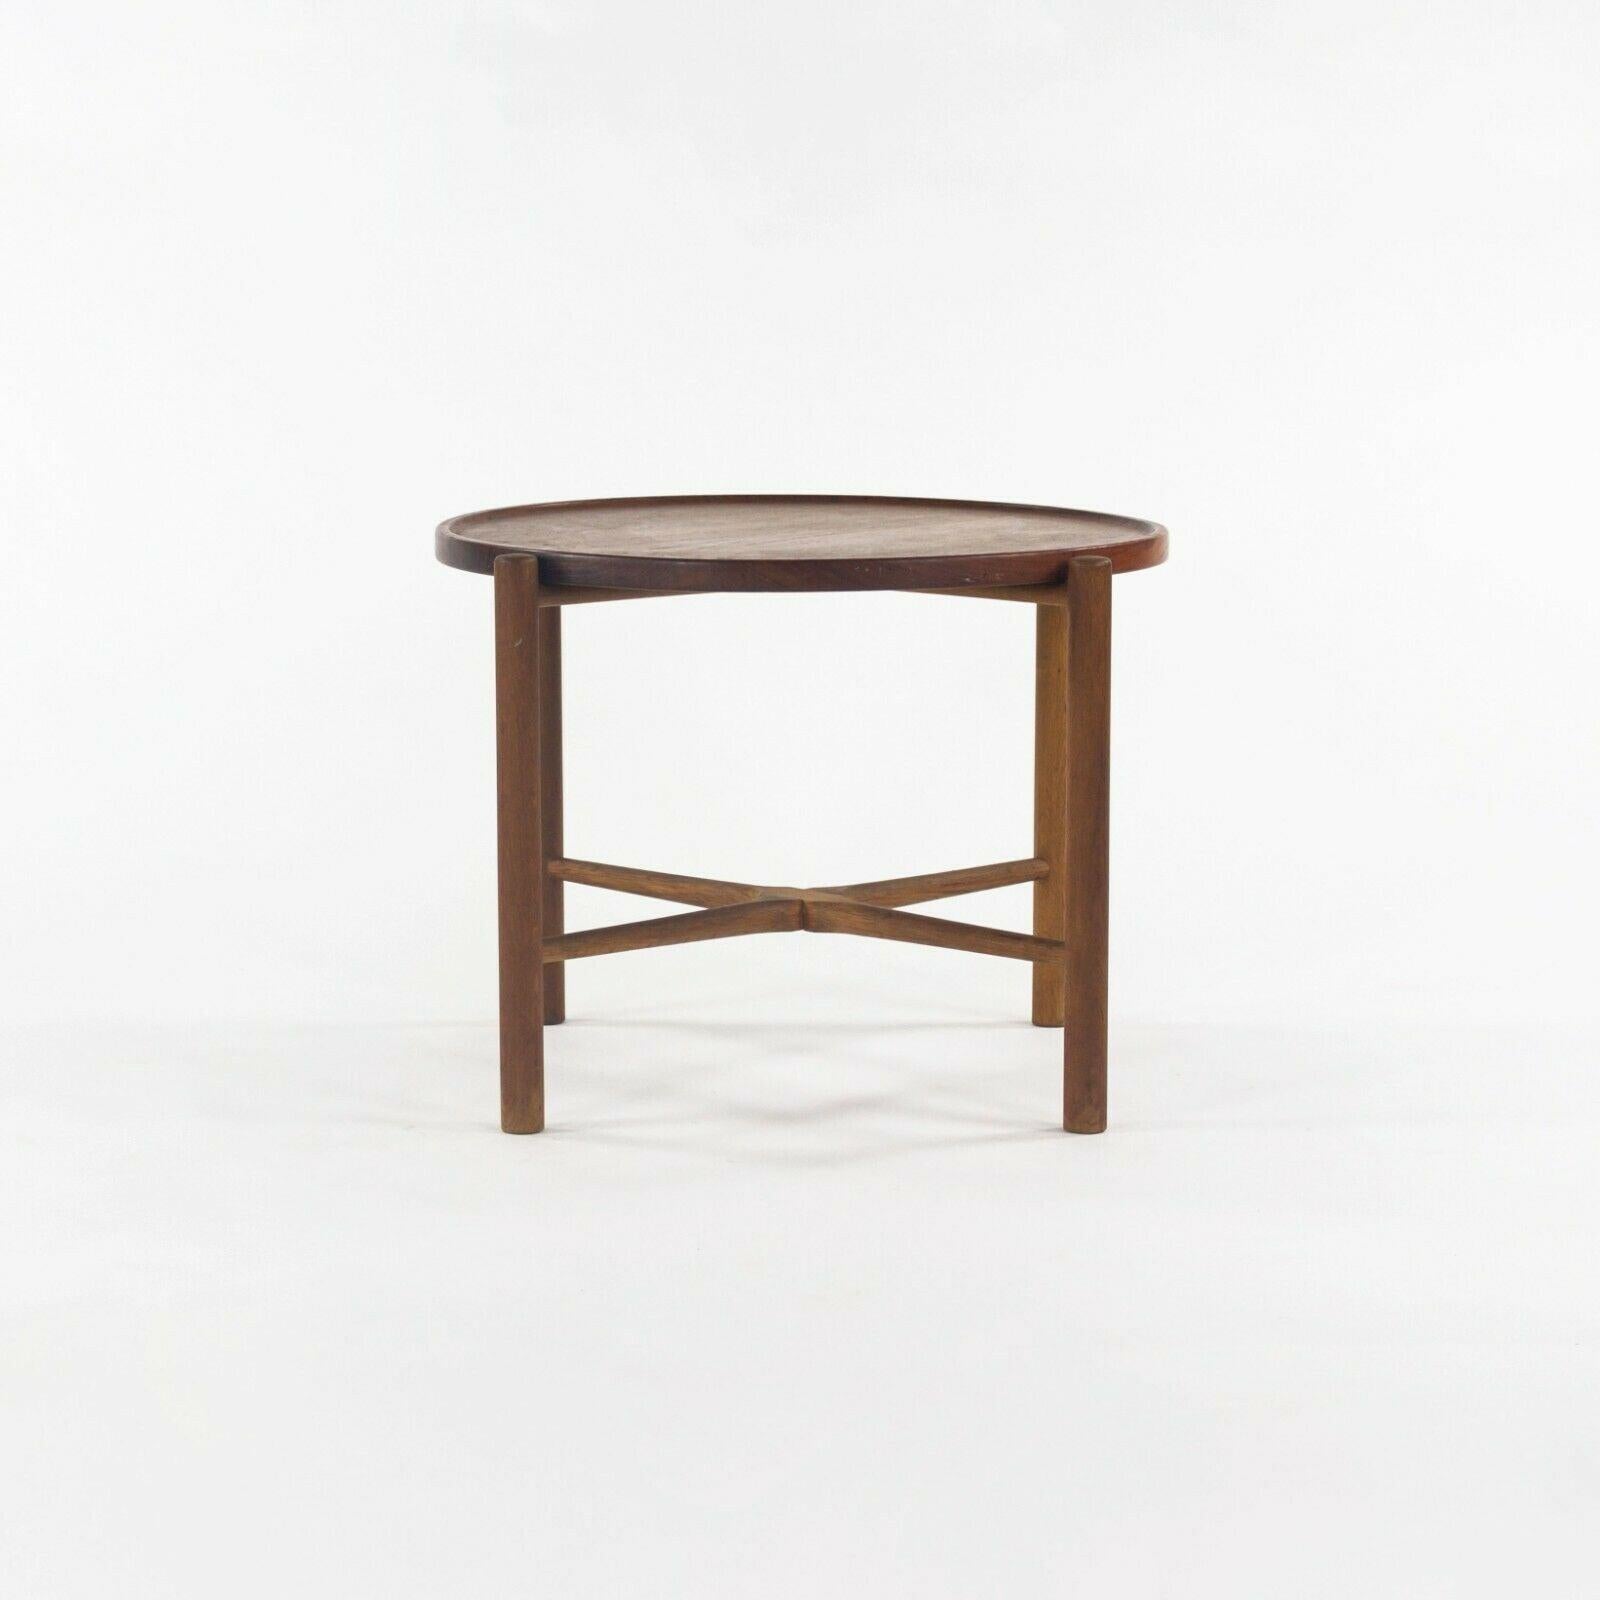 Danish 1960 PP35 Hans Wegner for &reas Tuck Folding Teak & Oak Side Table 2x Available For Sale